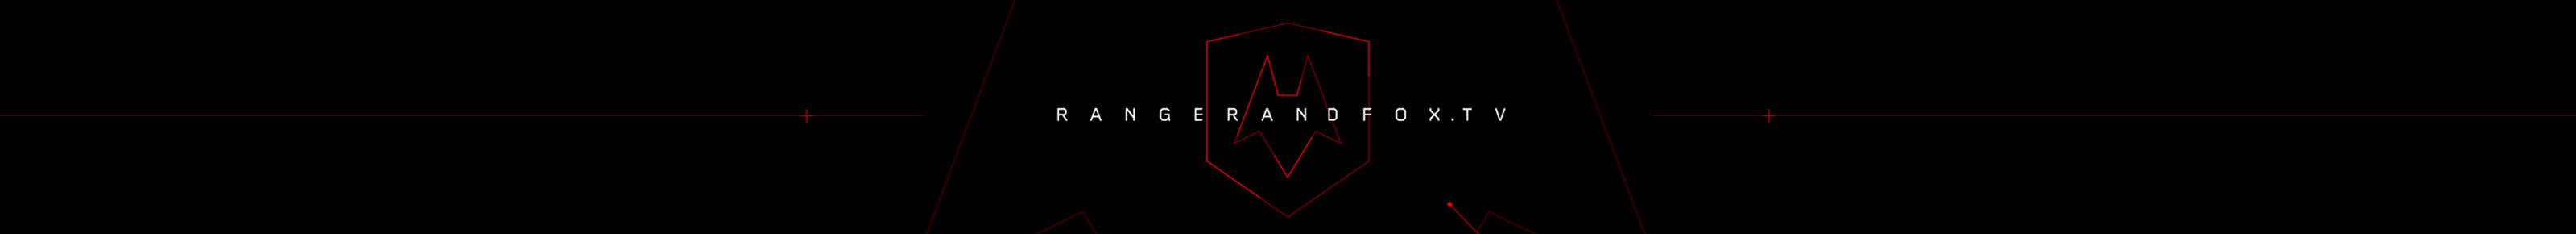 Ranger & Fox's profile banner